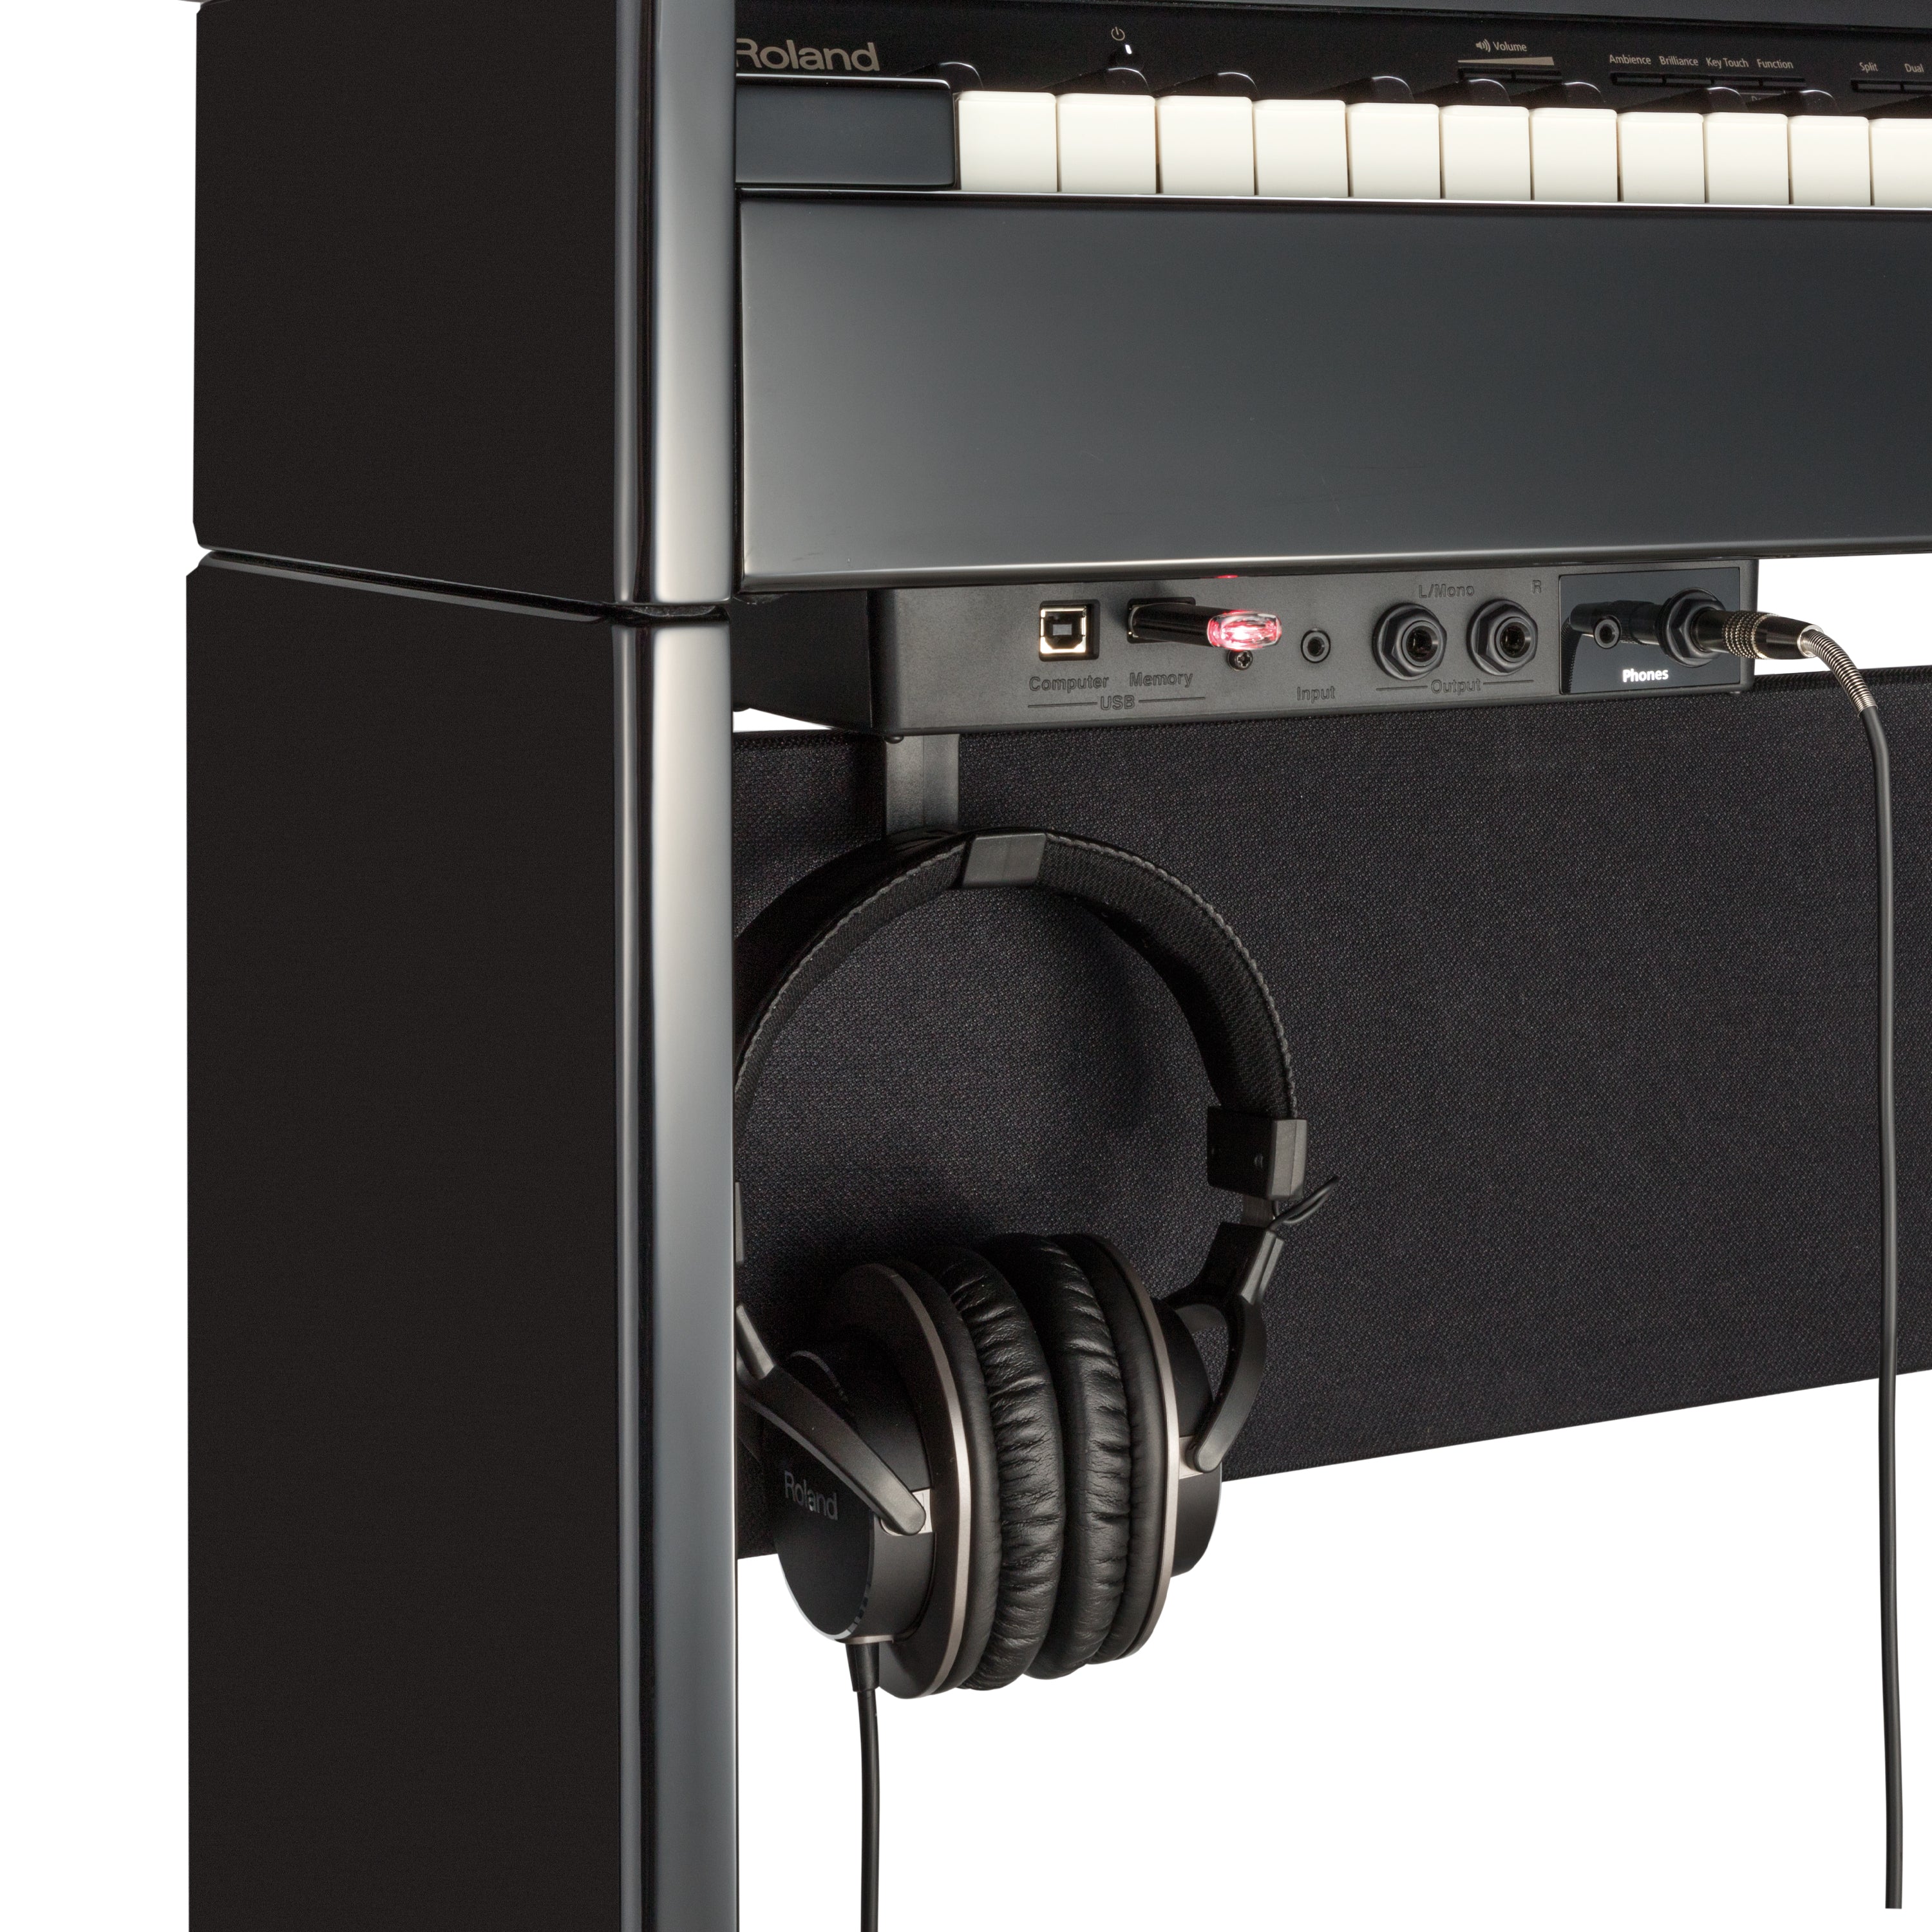 Roland DP603 Digital Piano - Polished Ebony - input and output jacks with headphone hook